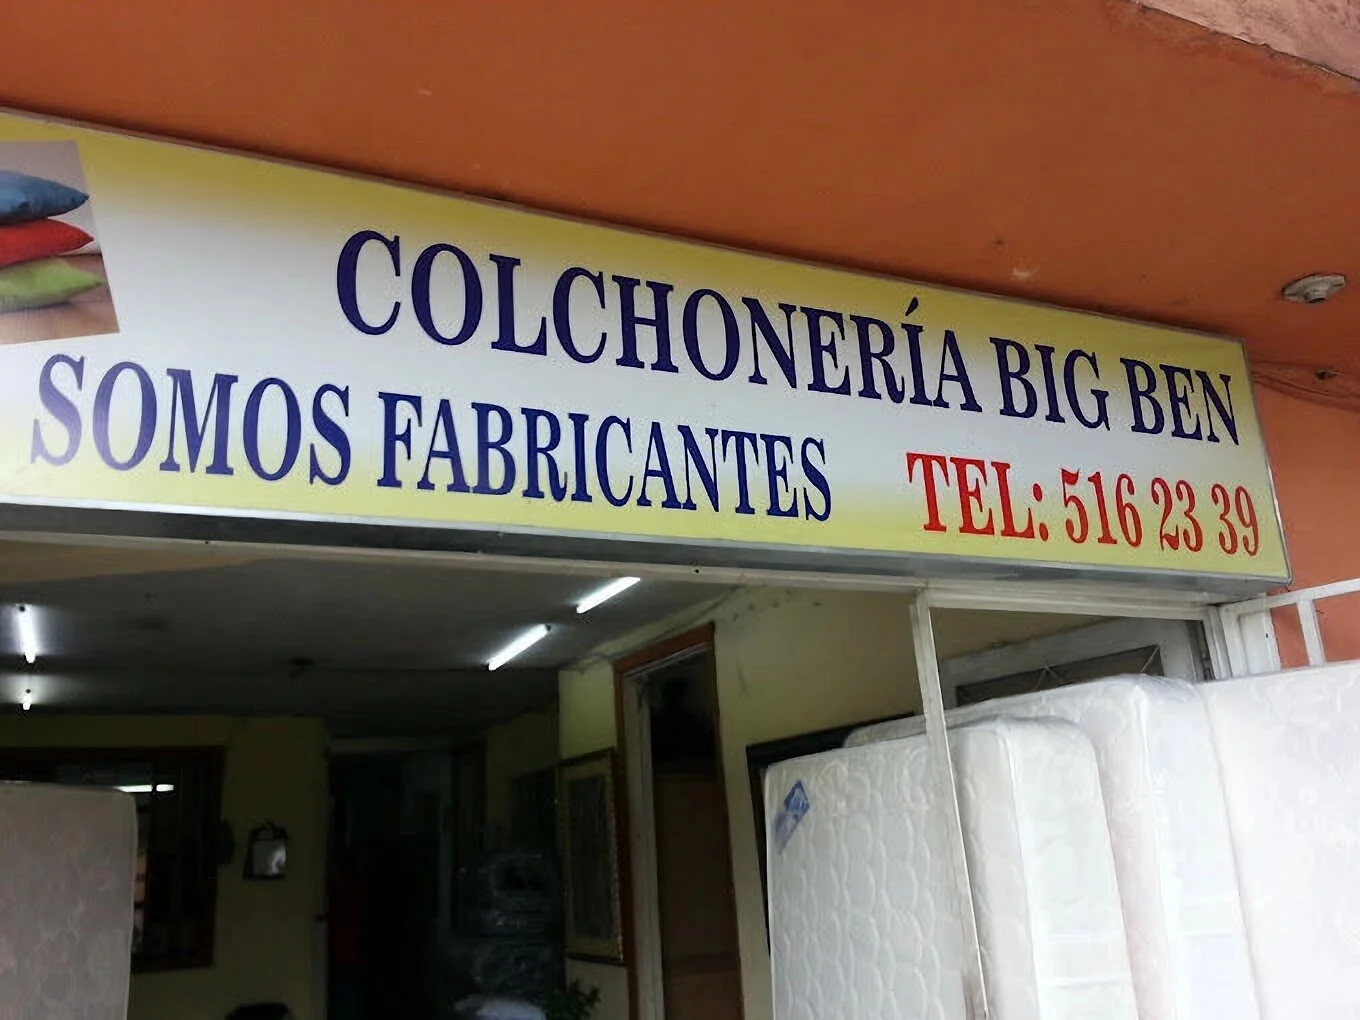 Colchones-colchoneria-big-ben-16756